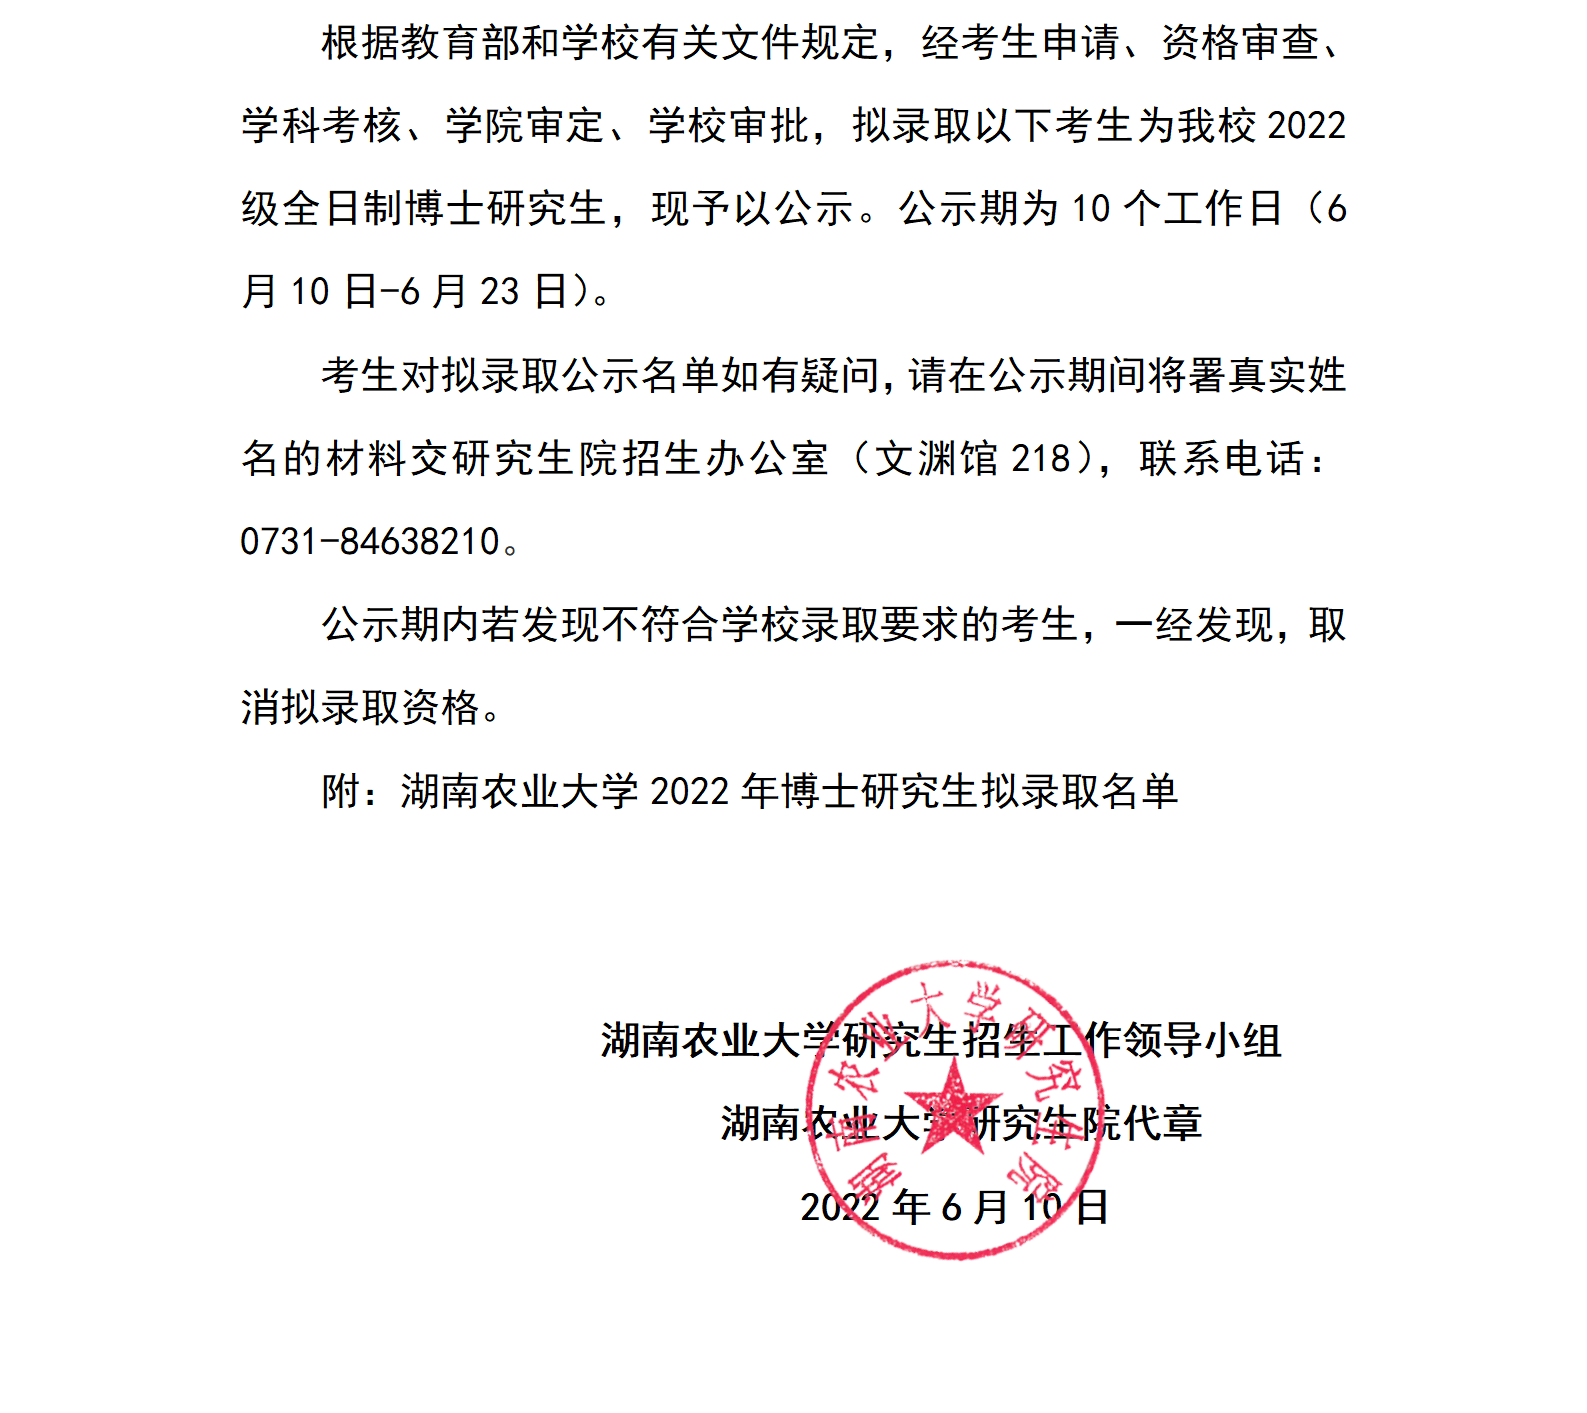 湖南农业大学2022年博士研究生拟录取名单公示_01(1).png